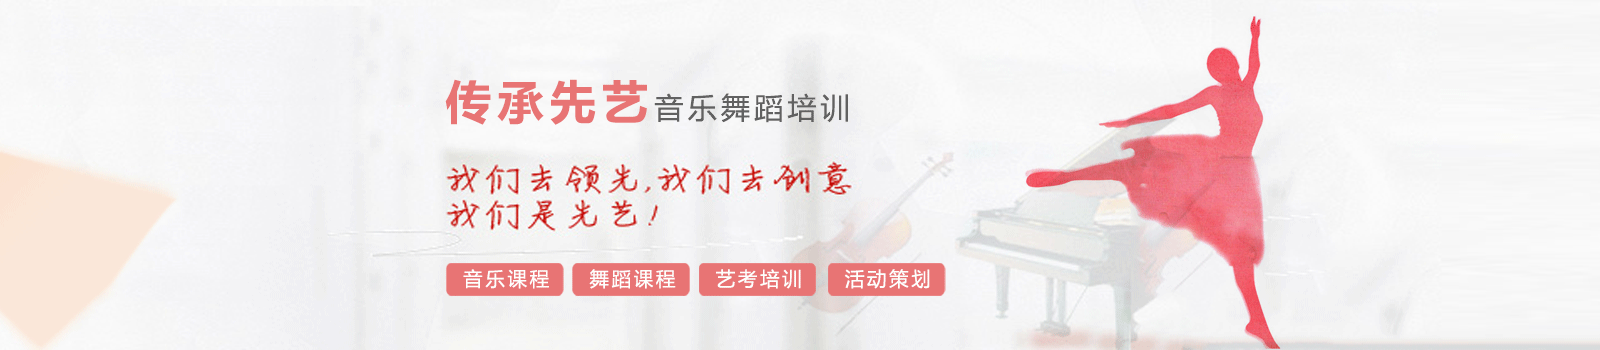 北京传承先艺音乐舞蹈培训网